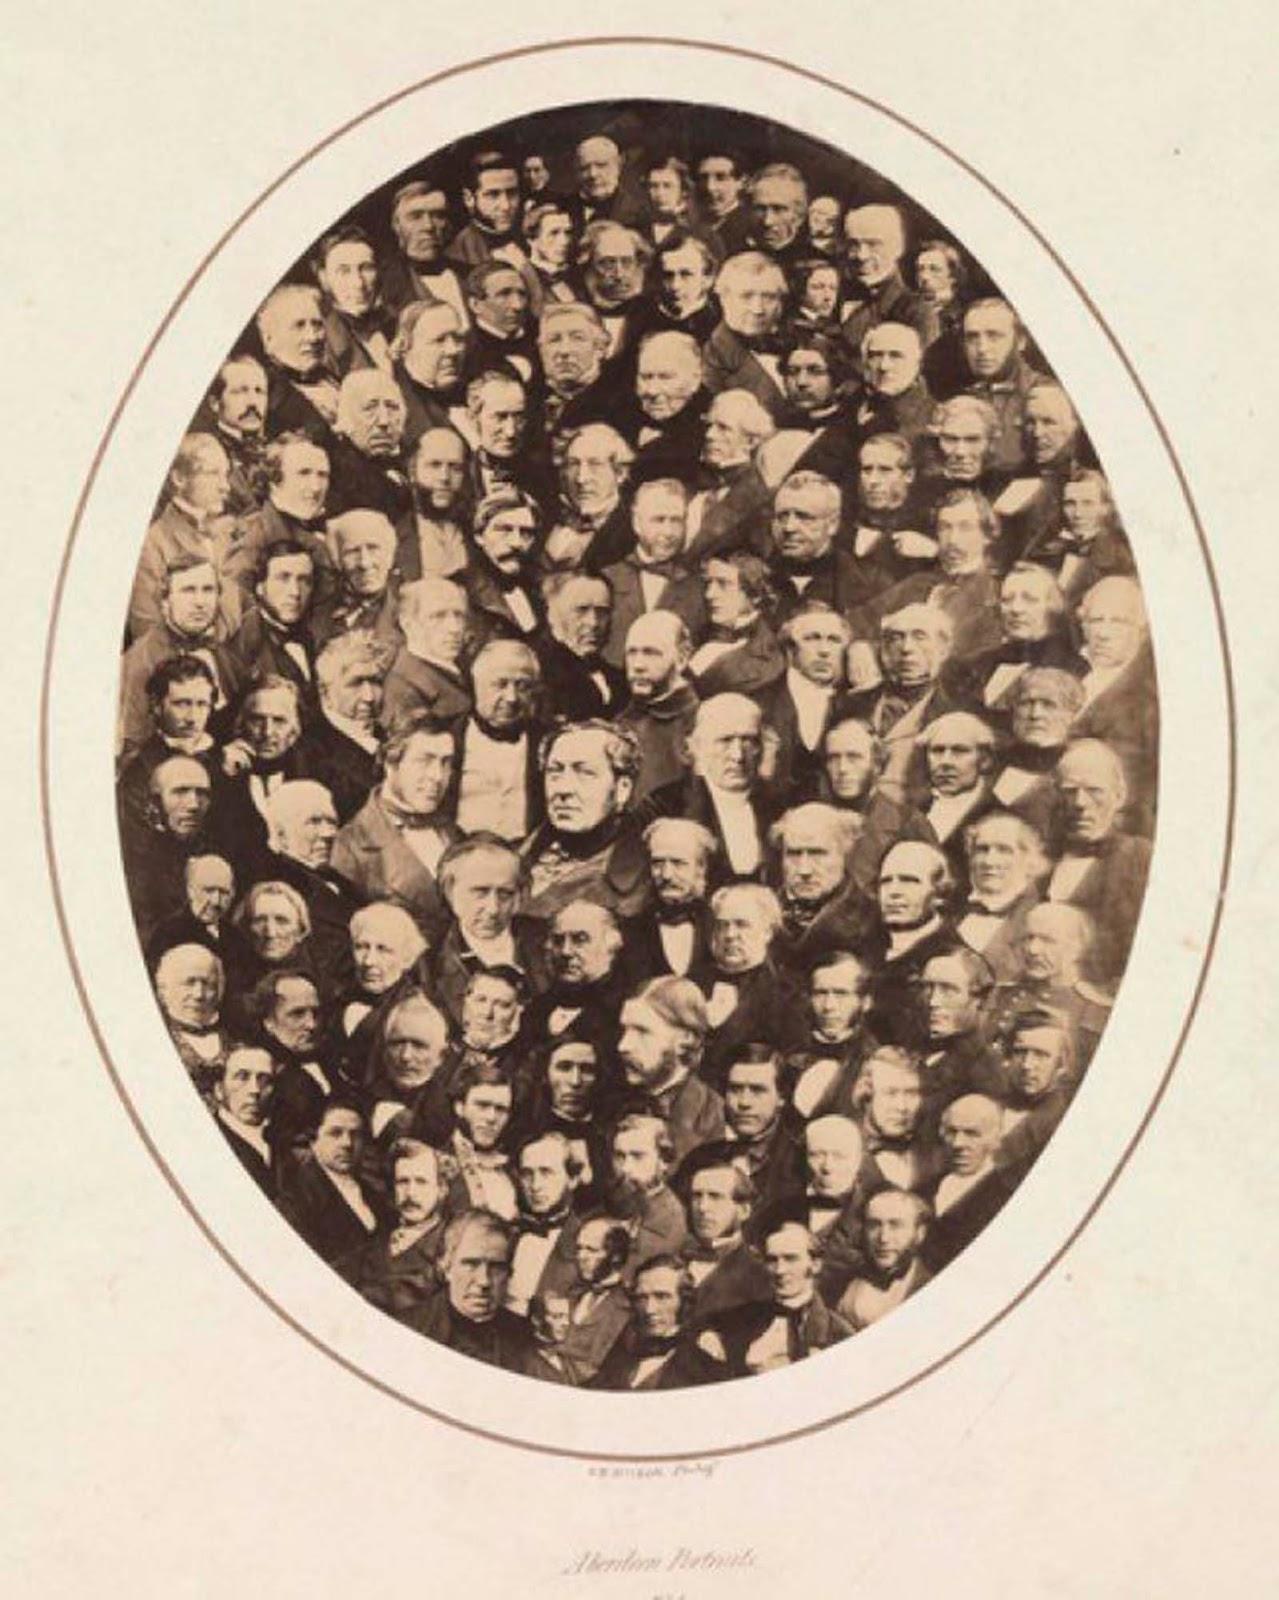 Comment les gens manipulés photos avant Photoshop, 1850-1950